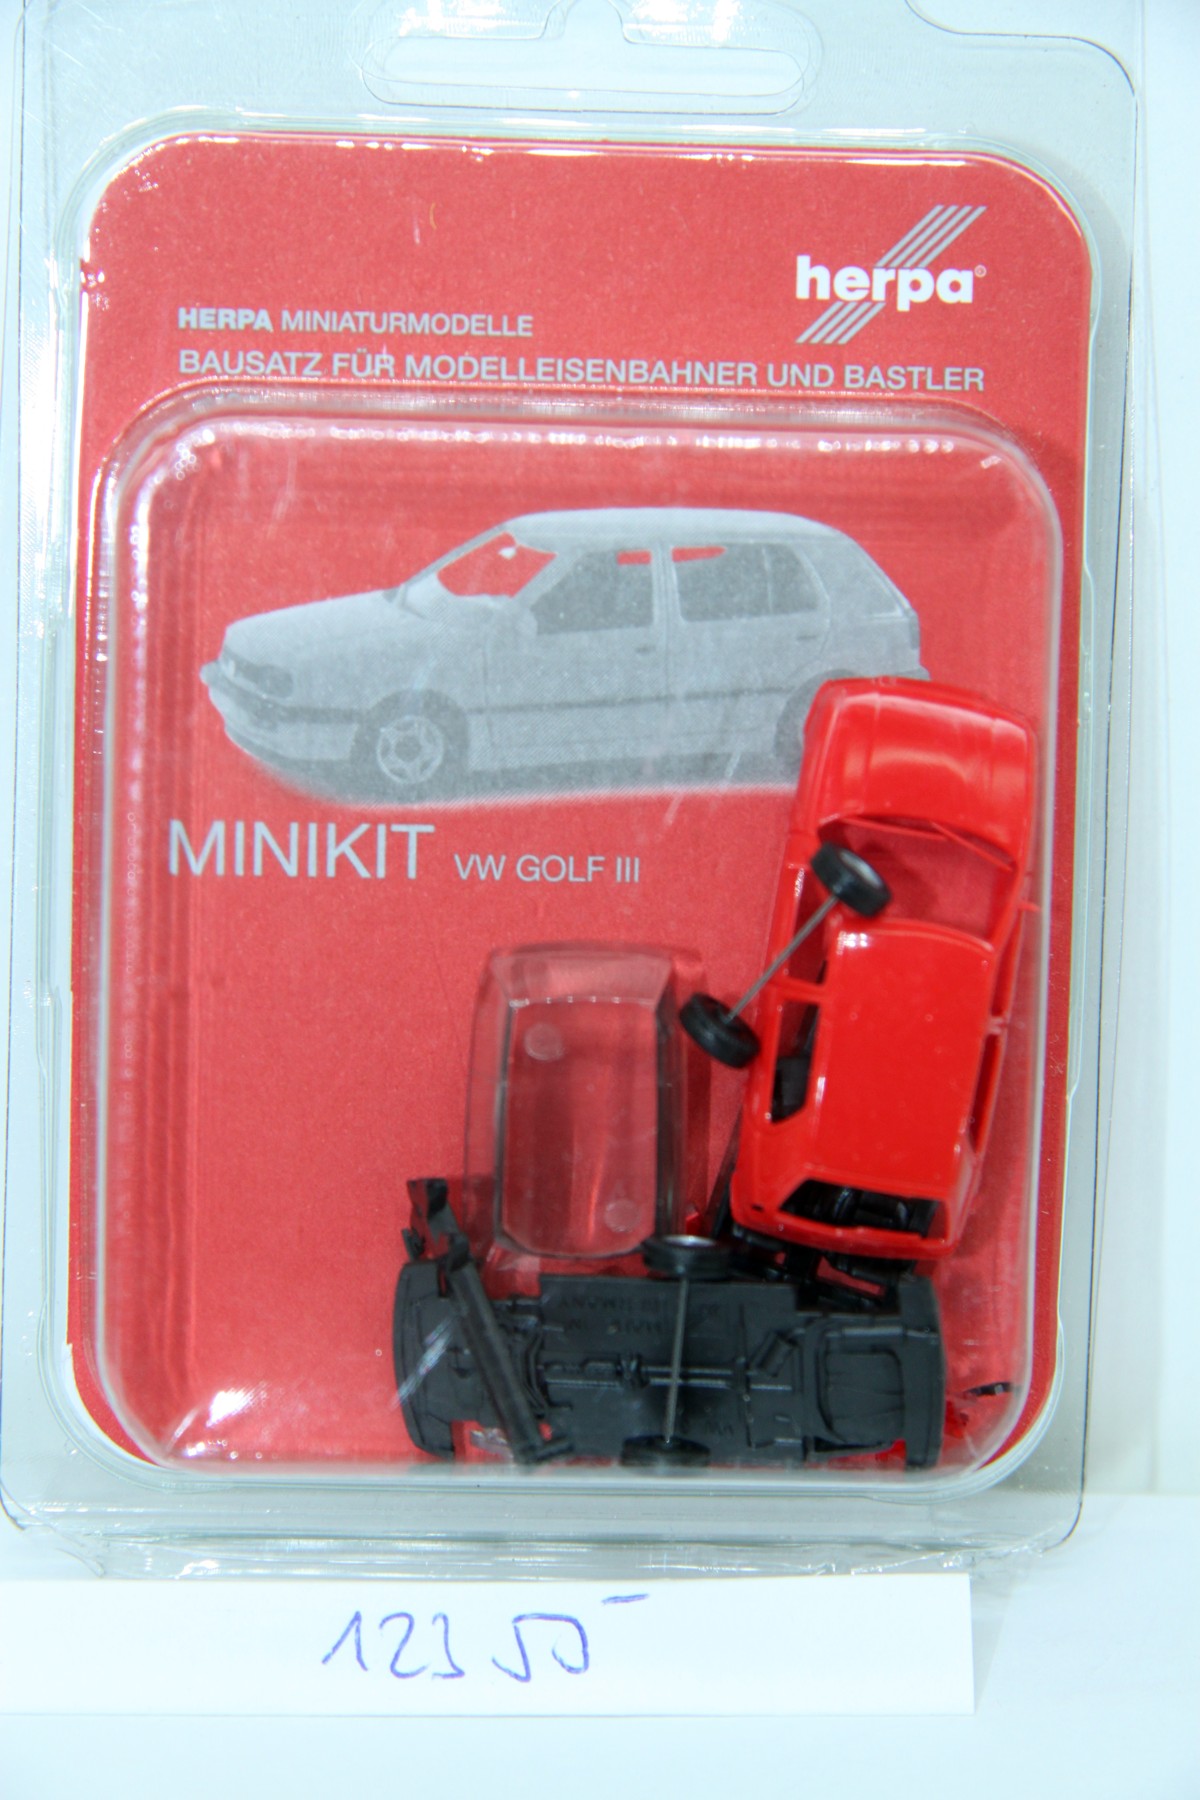 Herpa 012355, MiniKit, Volkswagen VW Golf III, 4-door, red, for H0 gauge, with original box.